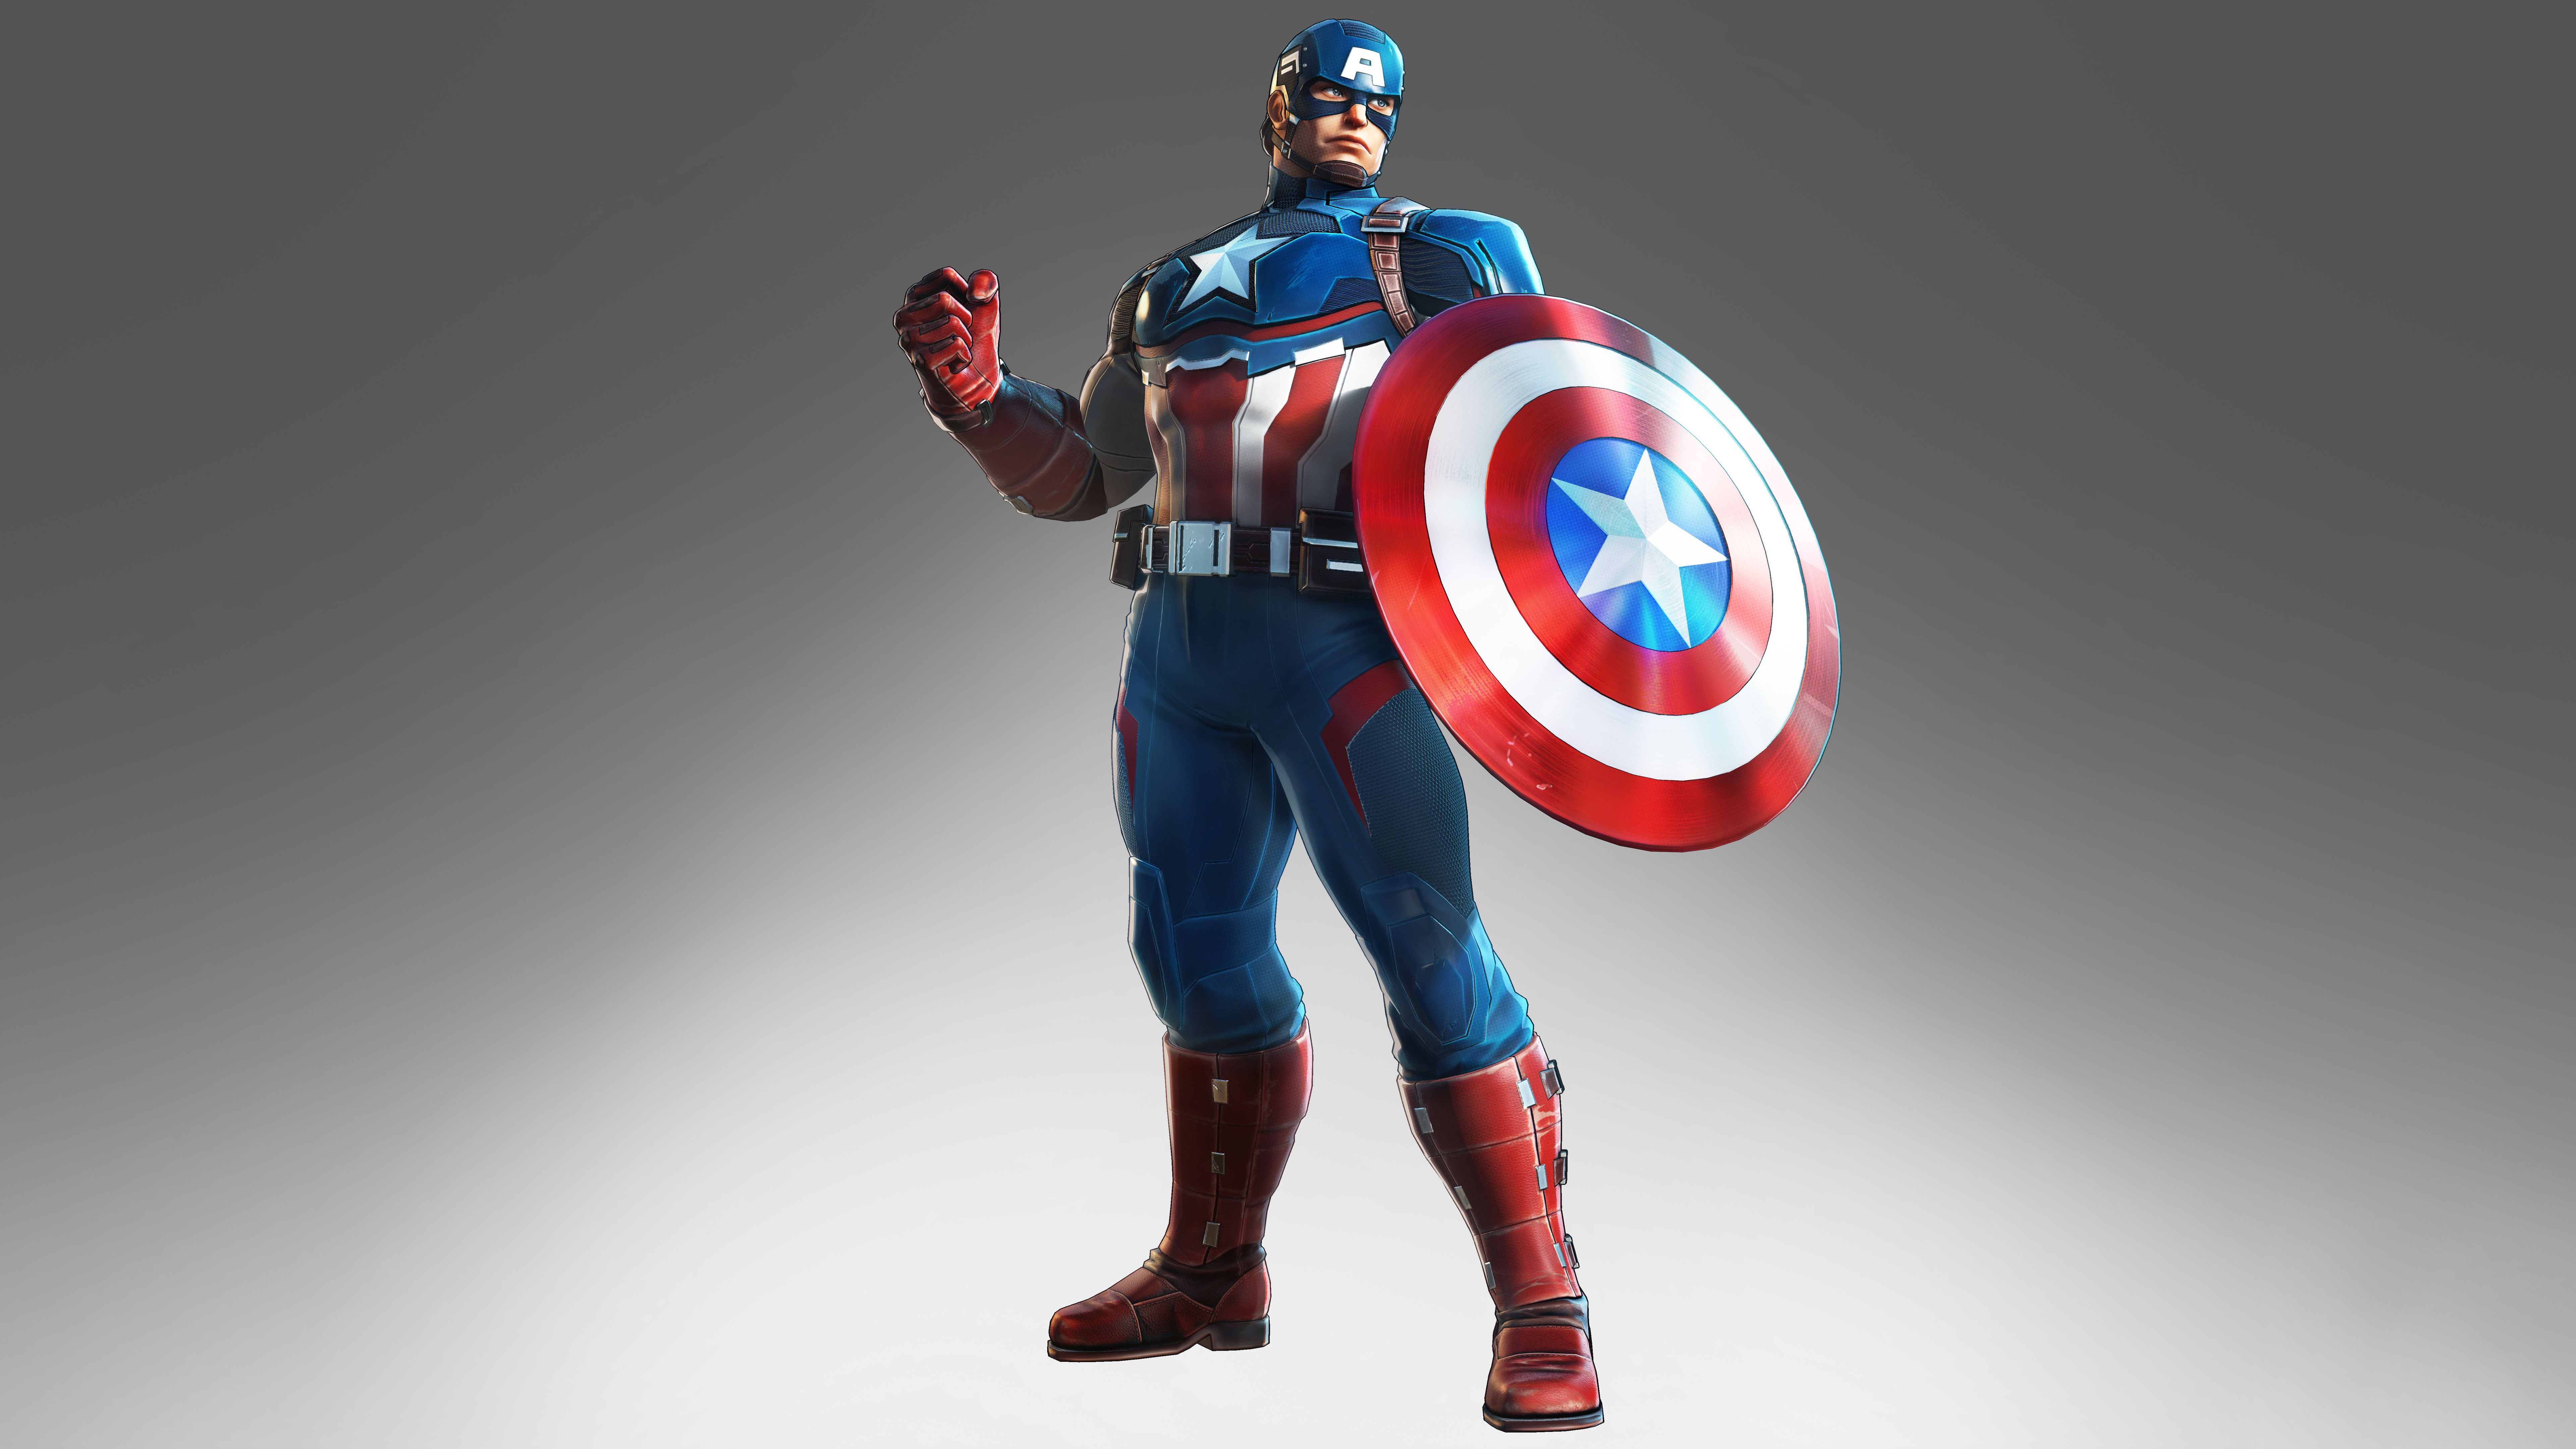 Captain America Marvel Ultimate Alliance 3 8K Wallpaper